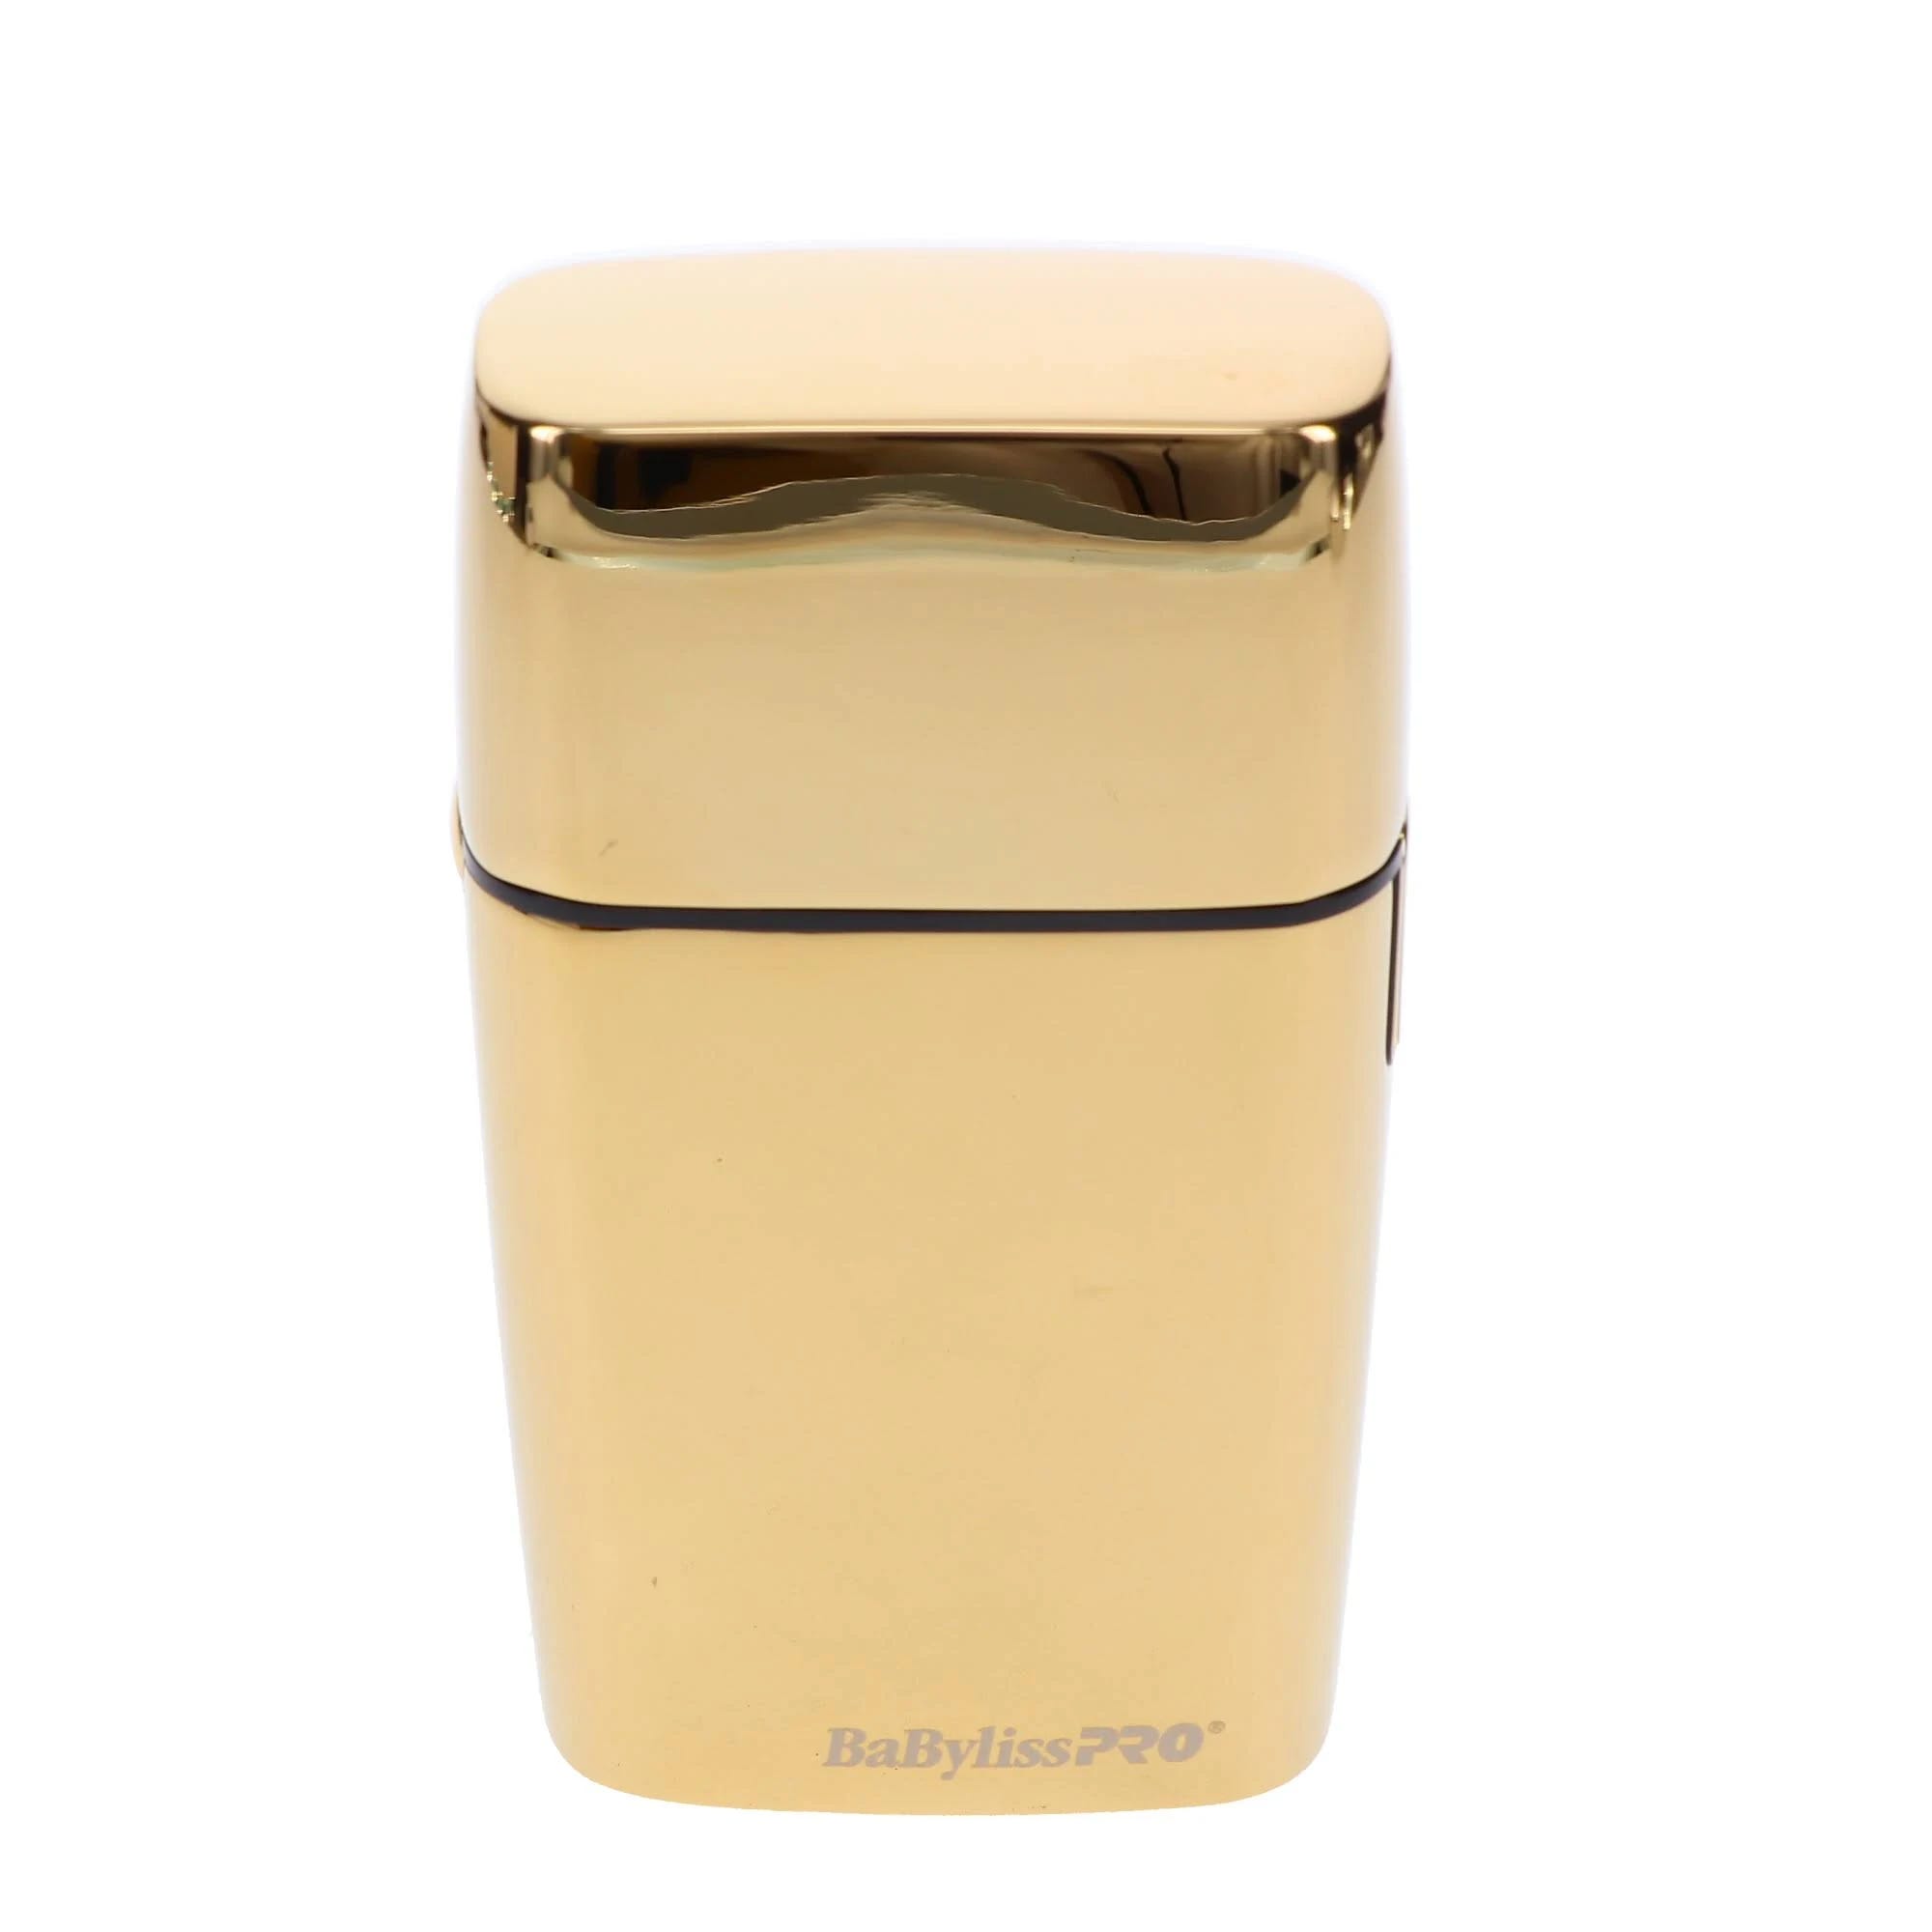 Cordless Gold Double Foil Face Shaver | Image